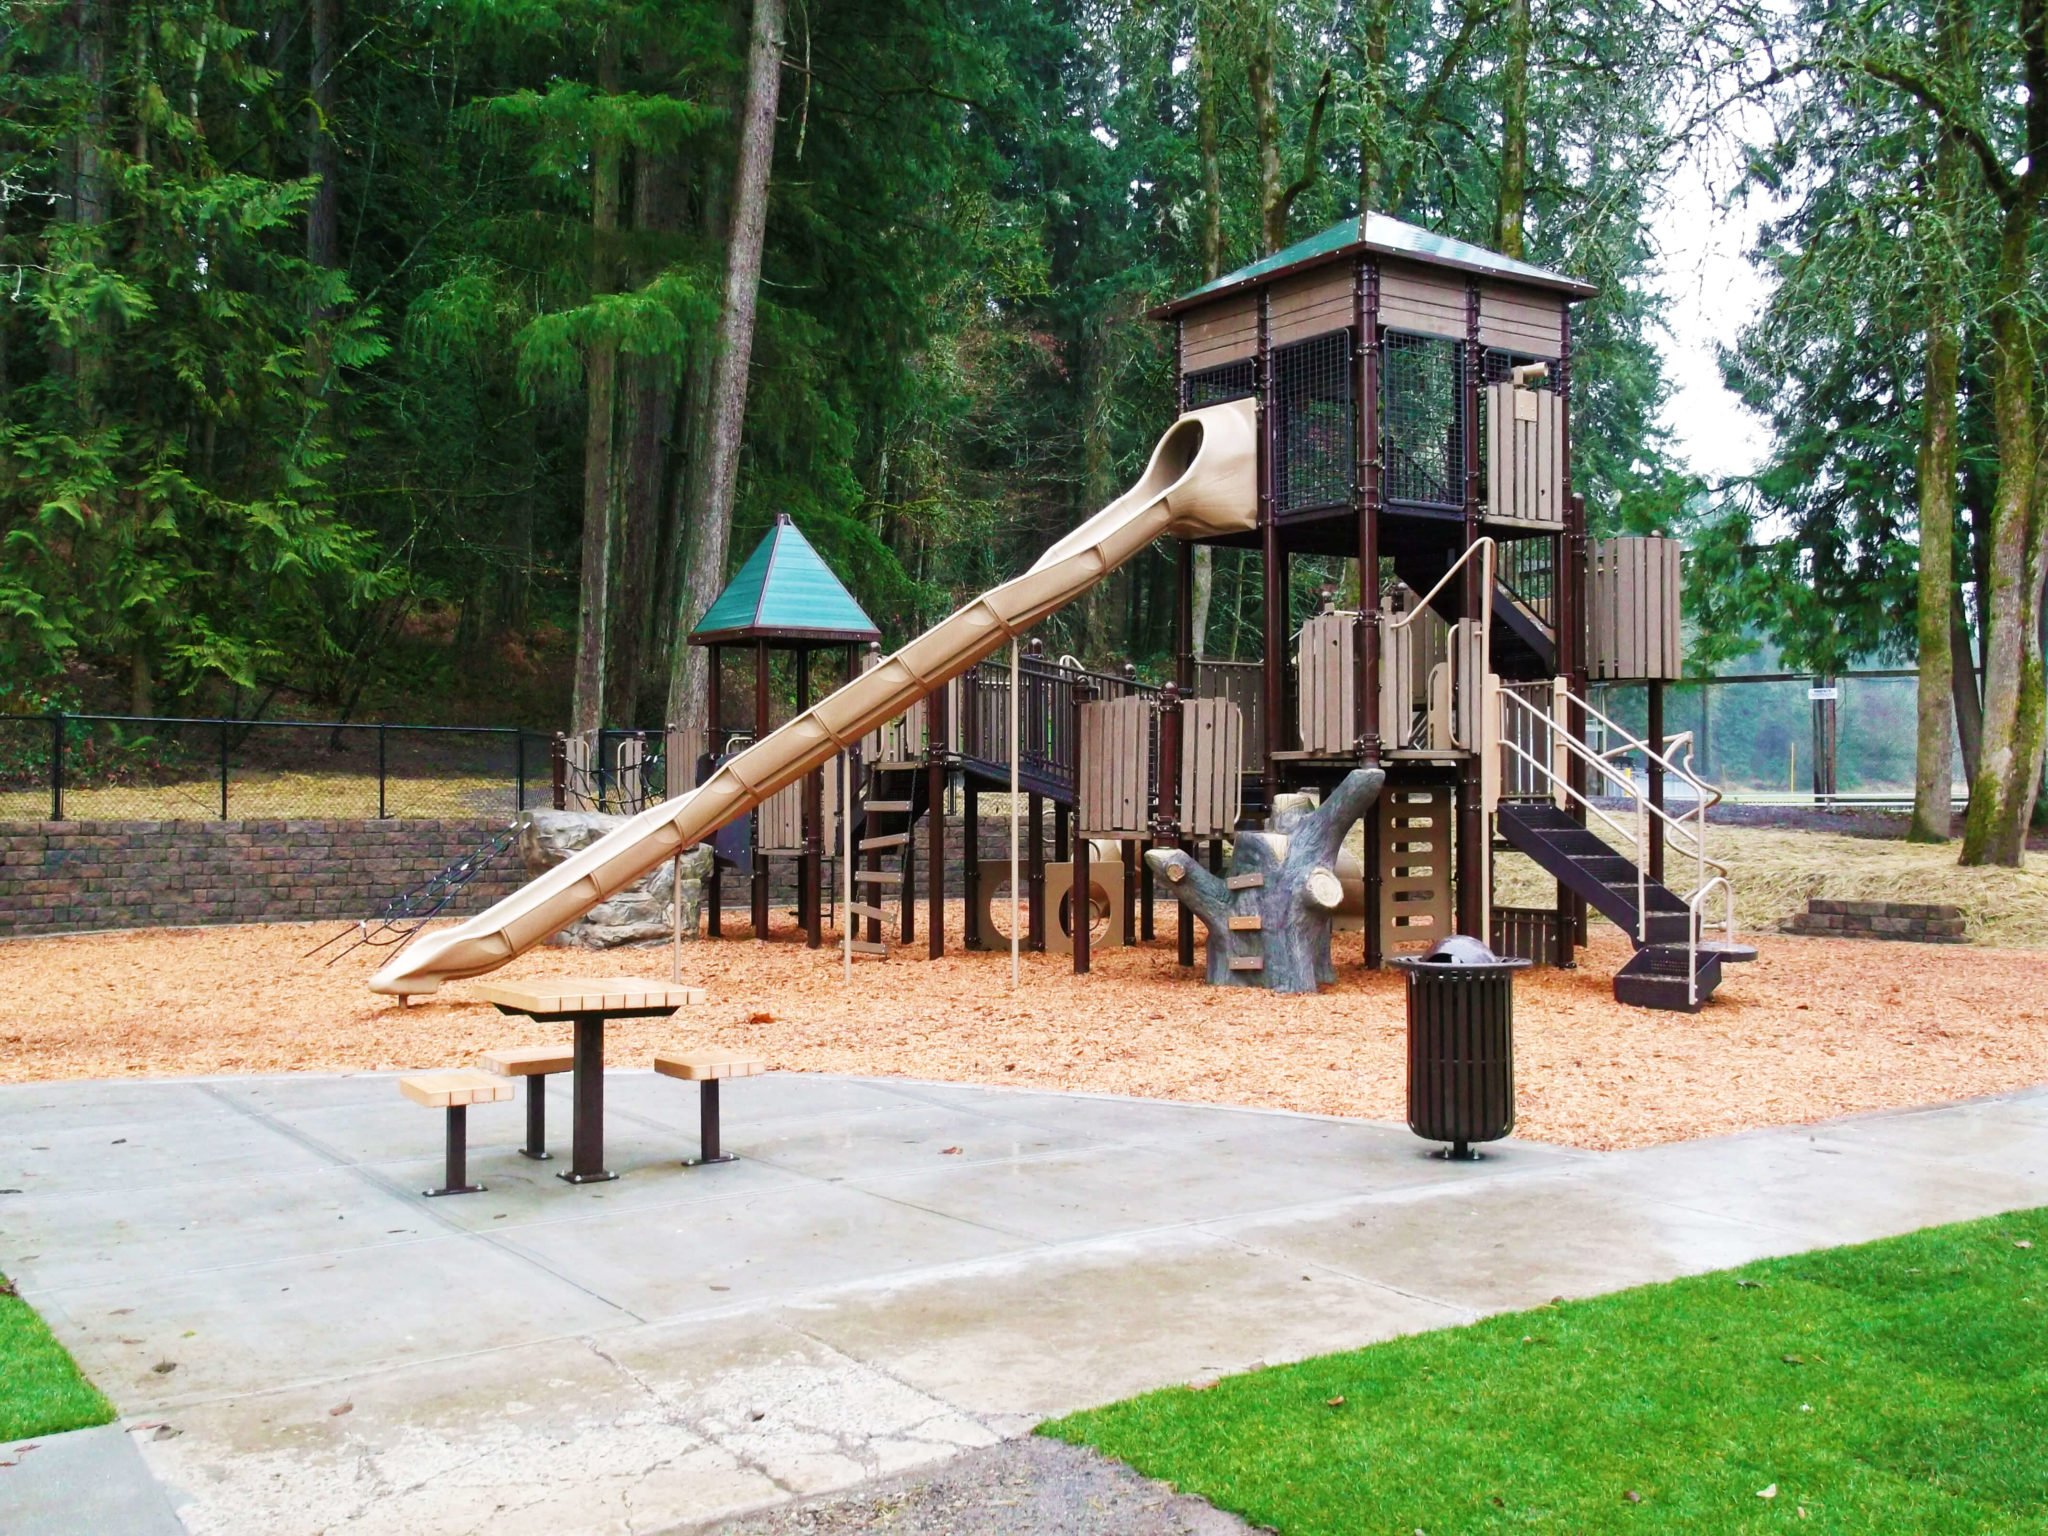 Abrams Park playground